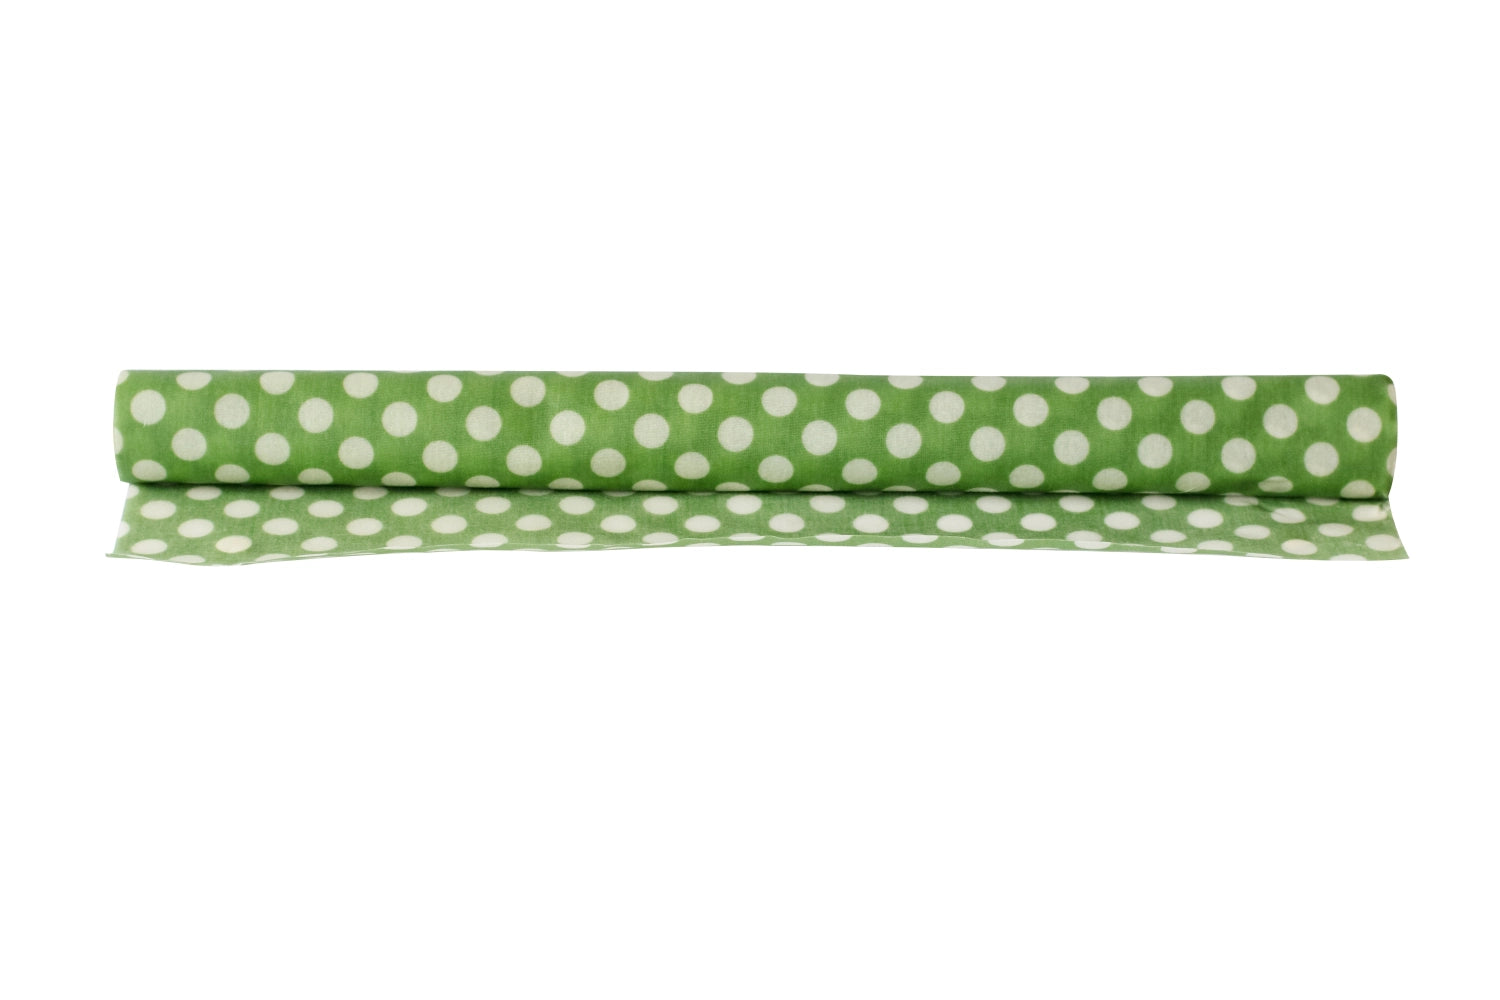 Pebbly Bienenwachstuch-Rolle grün, 30,5 x 100cm - KAQTU Design